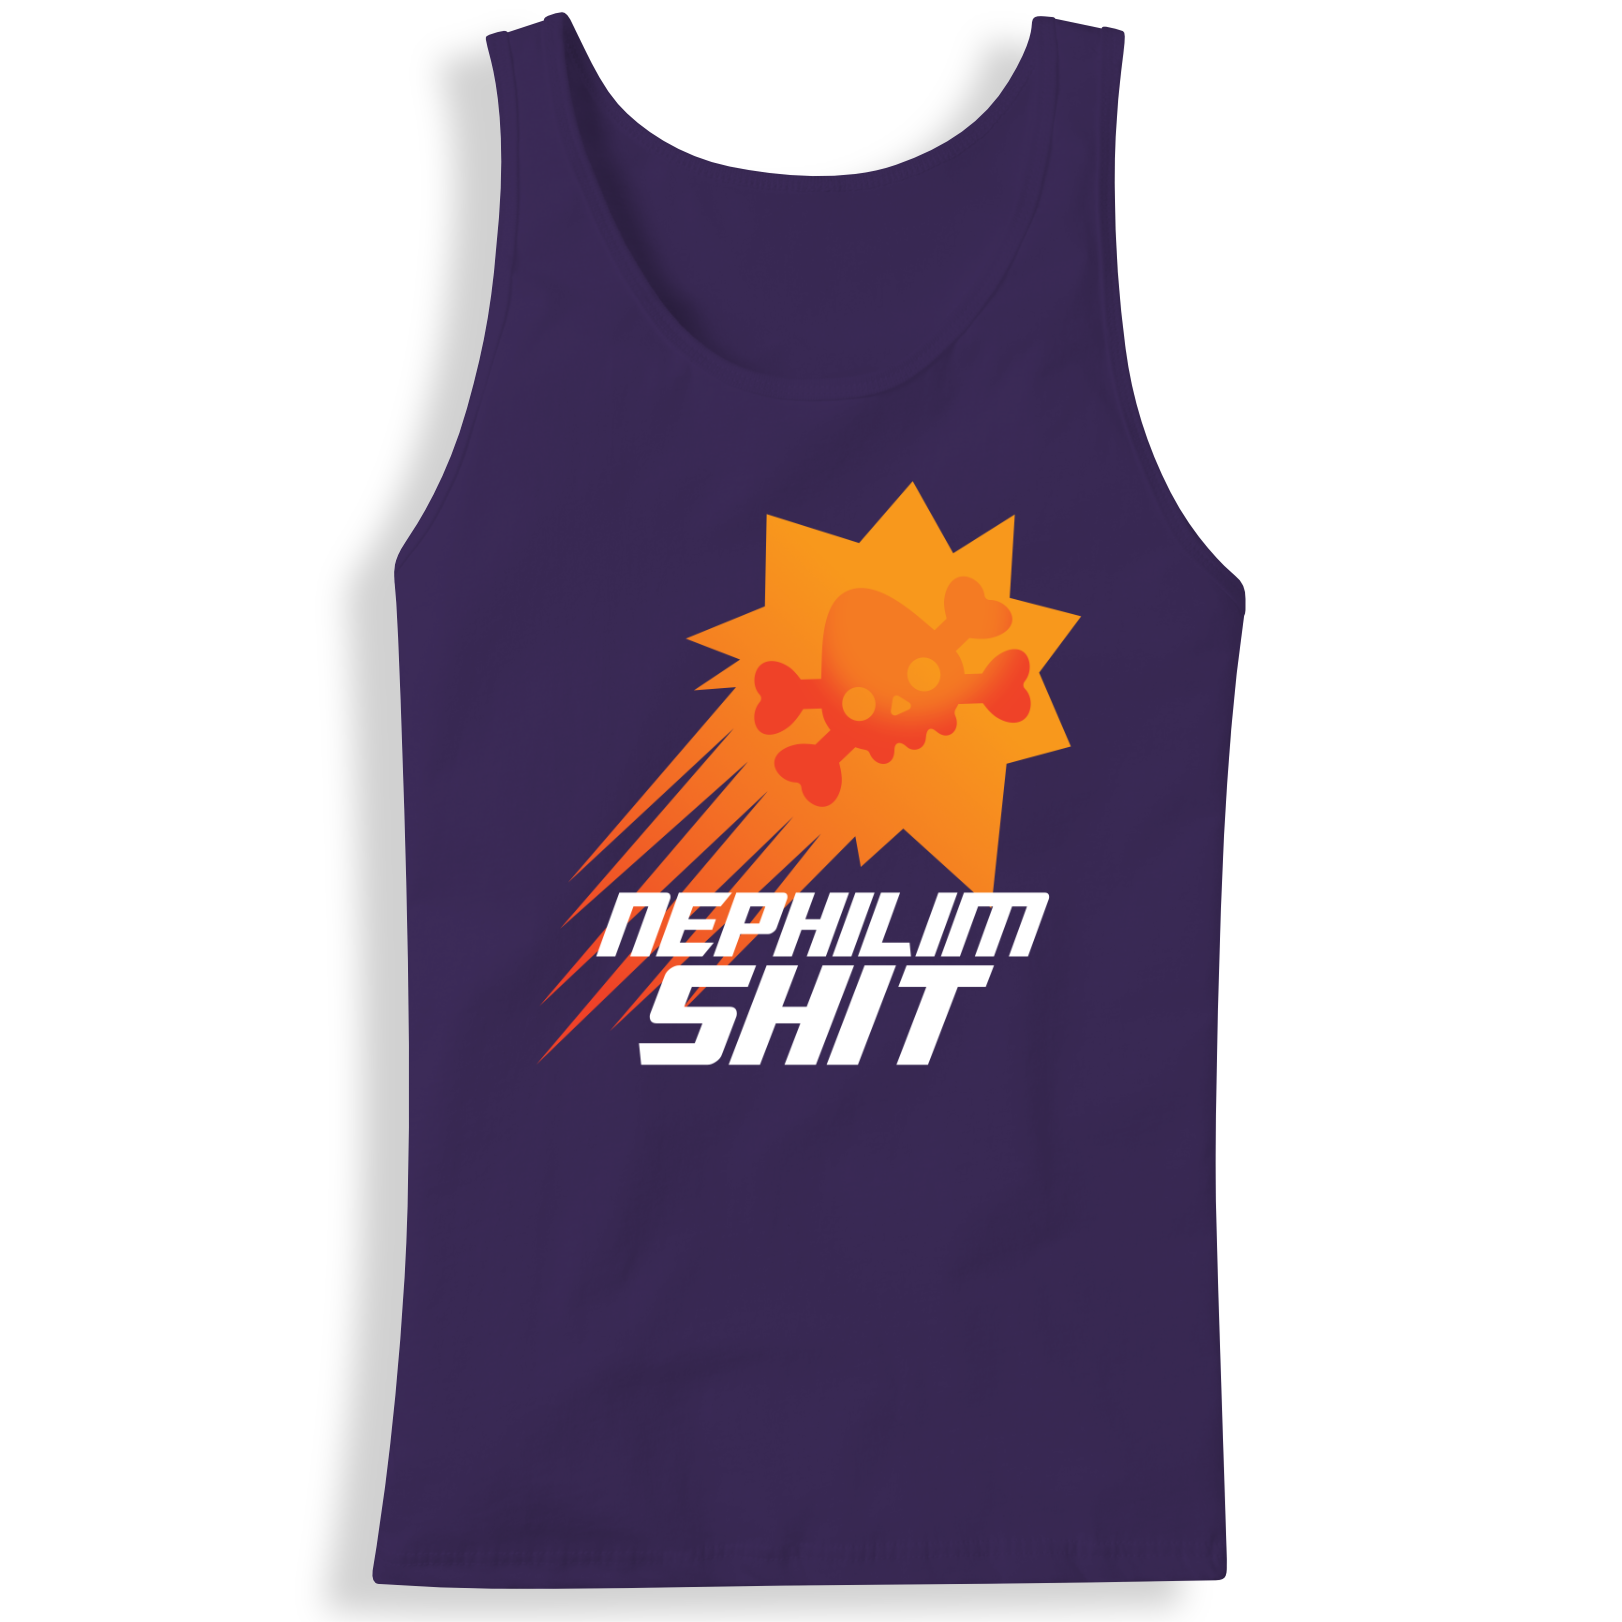 Buy purple Nephilim Suns Tanktop